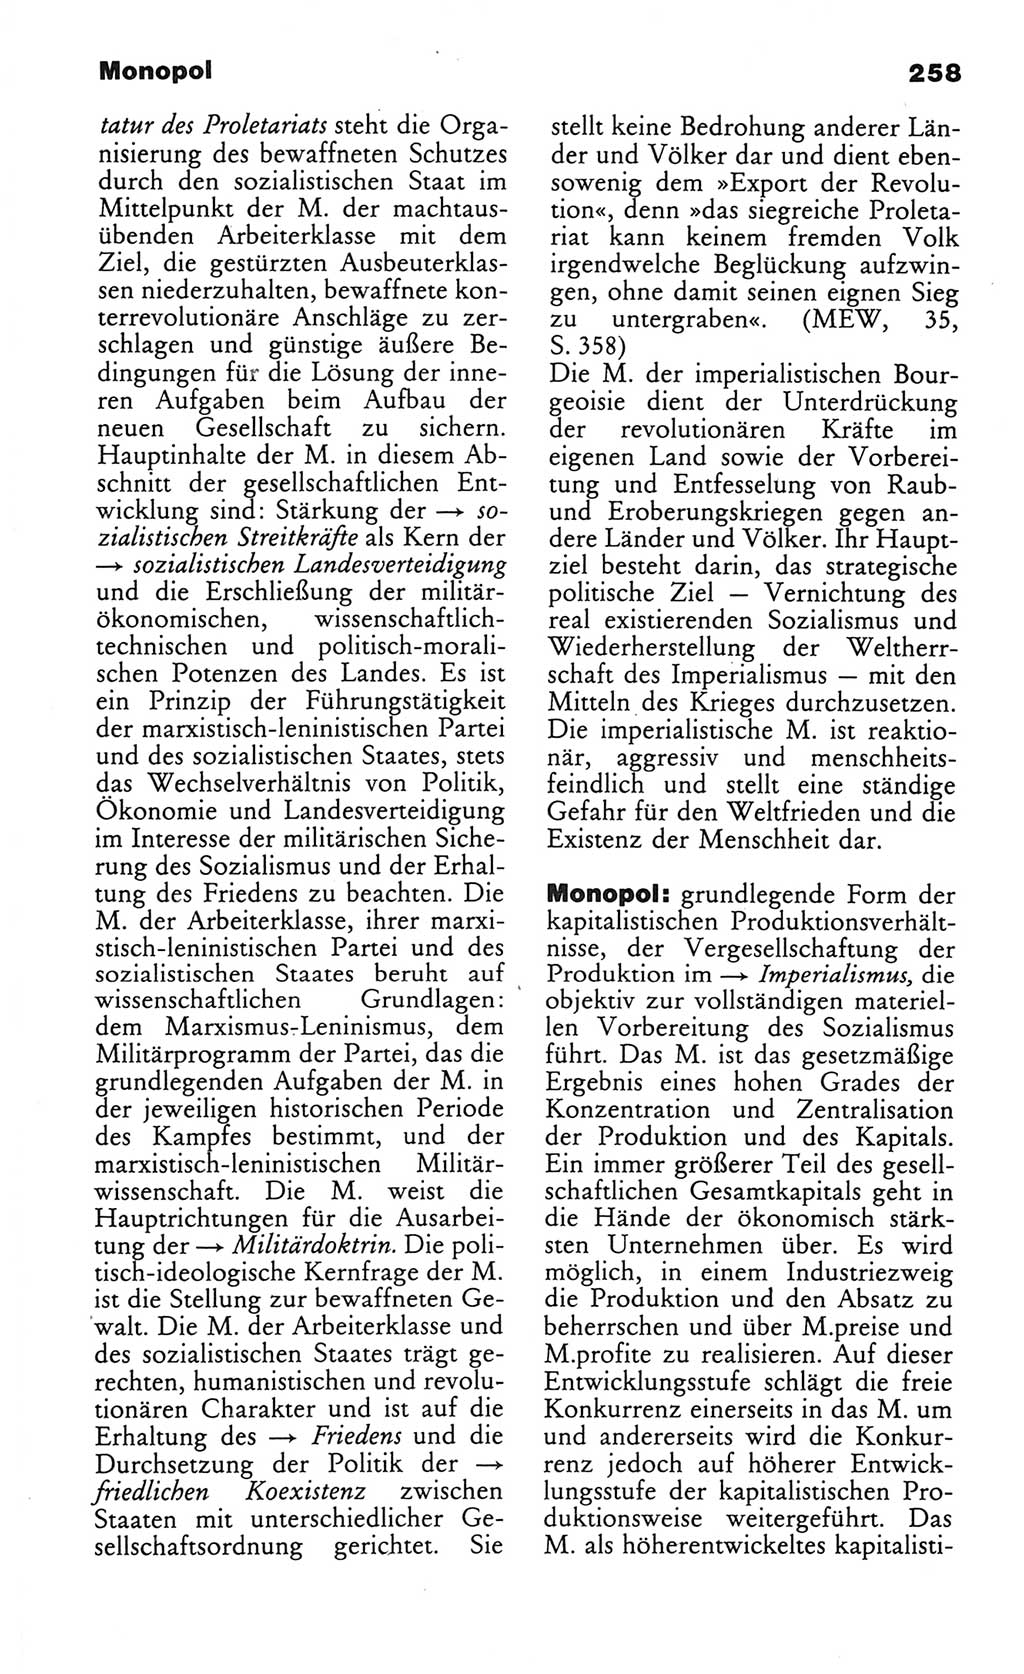 Wörterbuch des wissenschaftlichen Kommunismus [Deutsche Demokratische Republik (DDR)] 1984, Seite 258 (Wb. wiss. Komm. DDR 1984, S. 258)